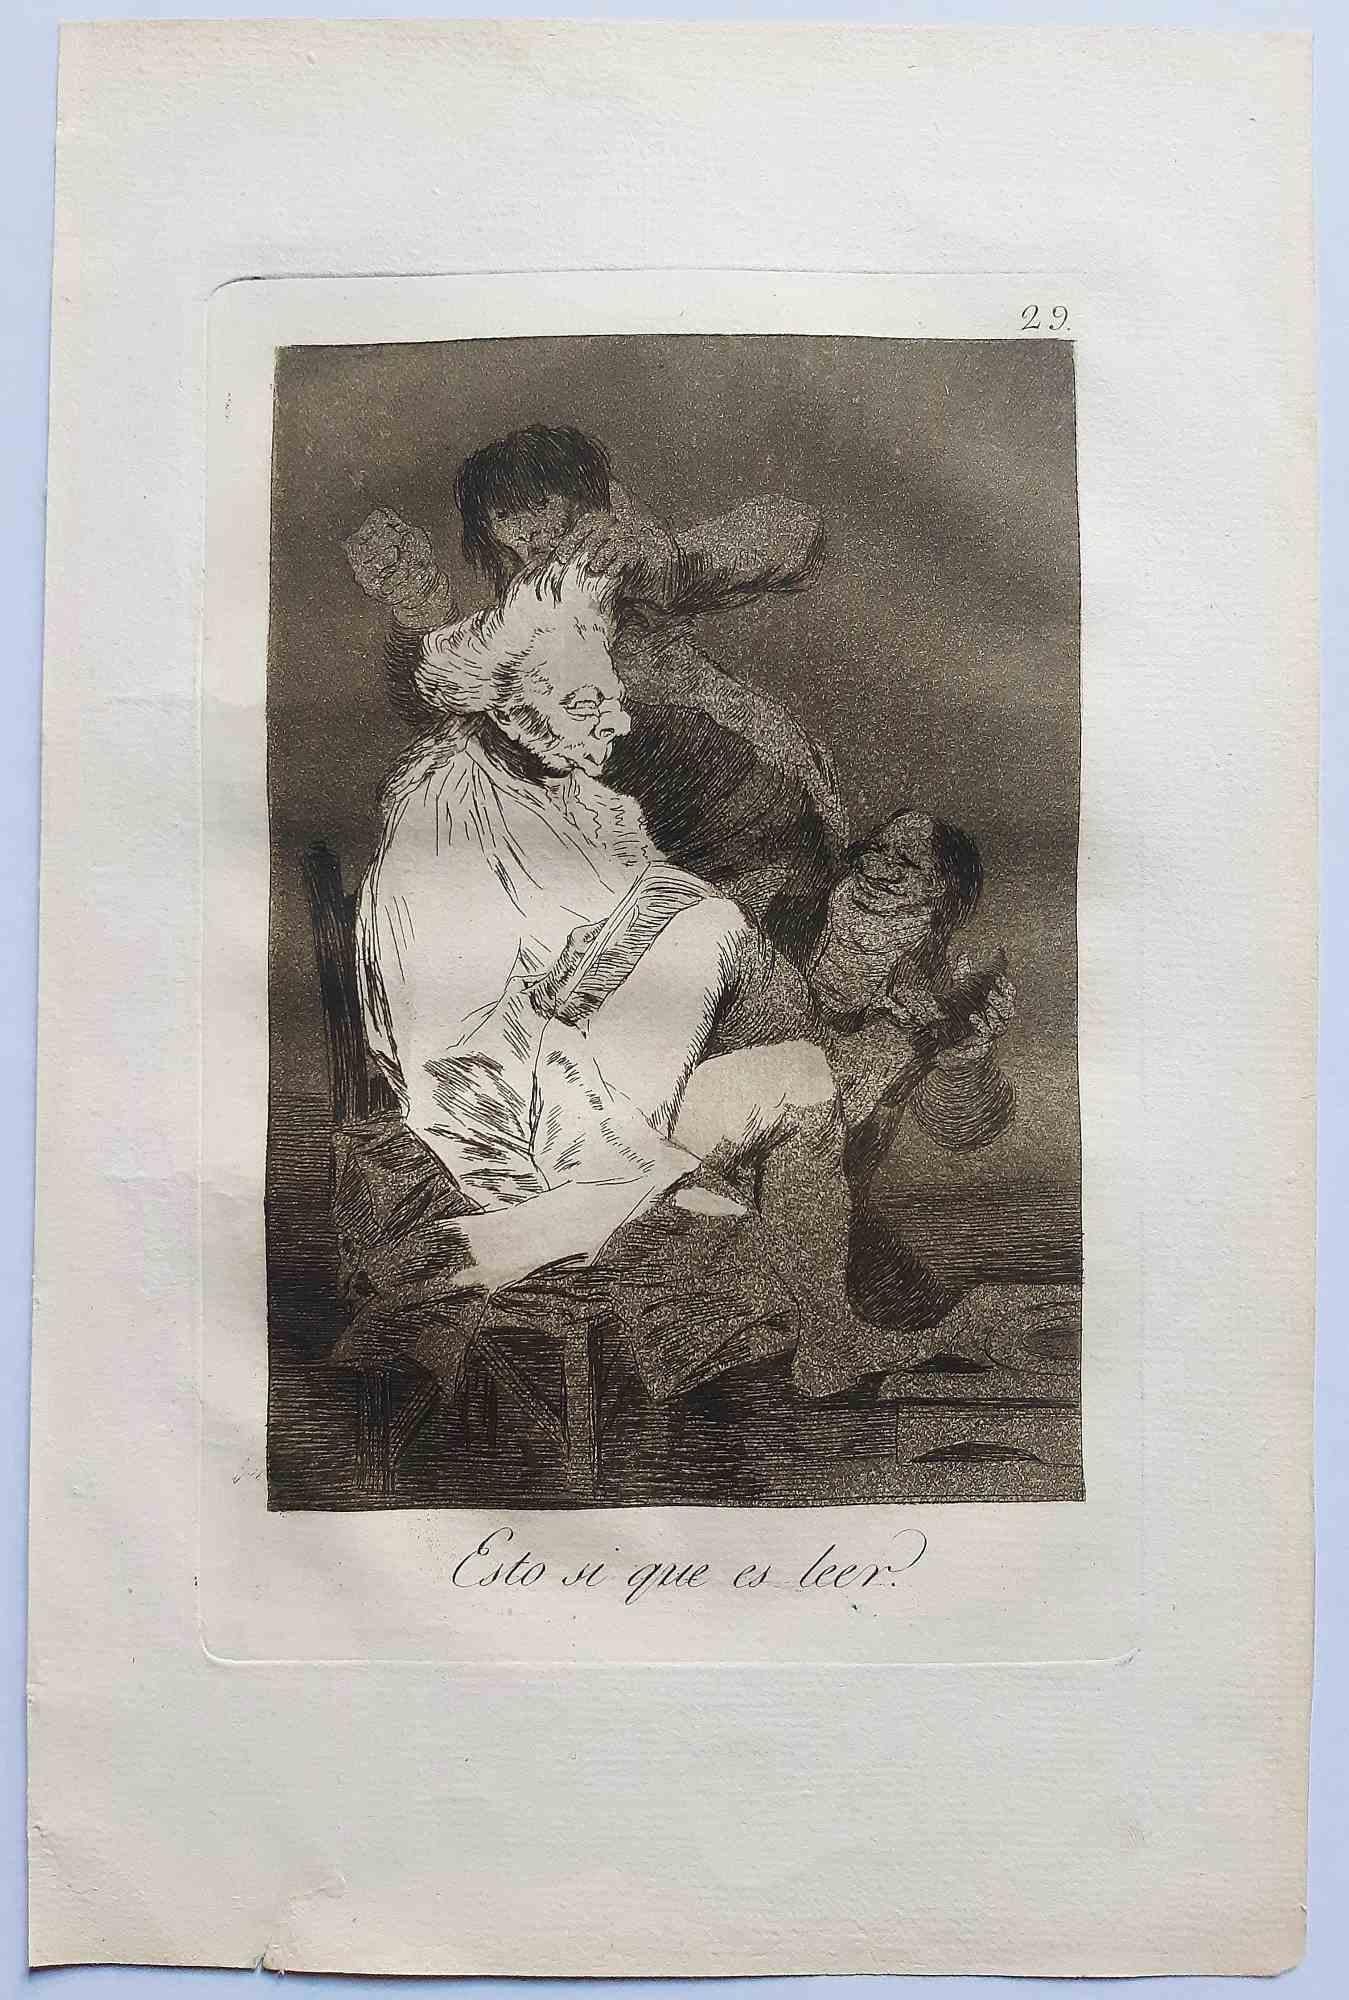 Esto si que es léer ist ein originales Kunstwerk des Künstlers Francisco Goya, das 1799 zum ersten Mal veröffentlicht wurde.

Radierung auf Papier.

Die Radierung ist Teil der Erstausgabe von "Los Caprichos", die 1799 von der Calcografia Nacional